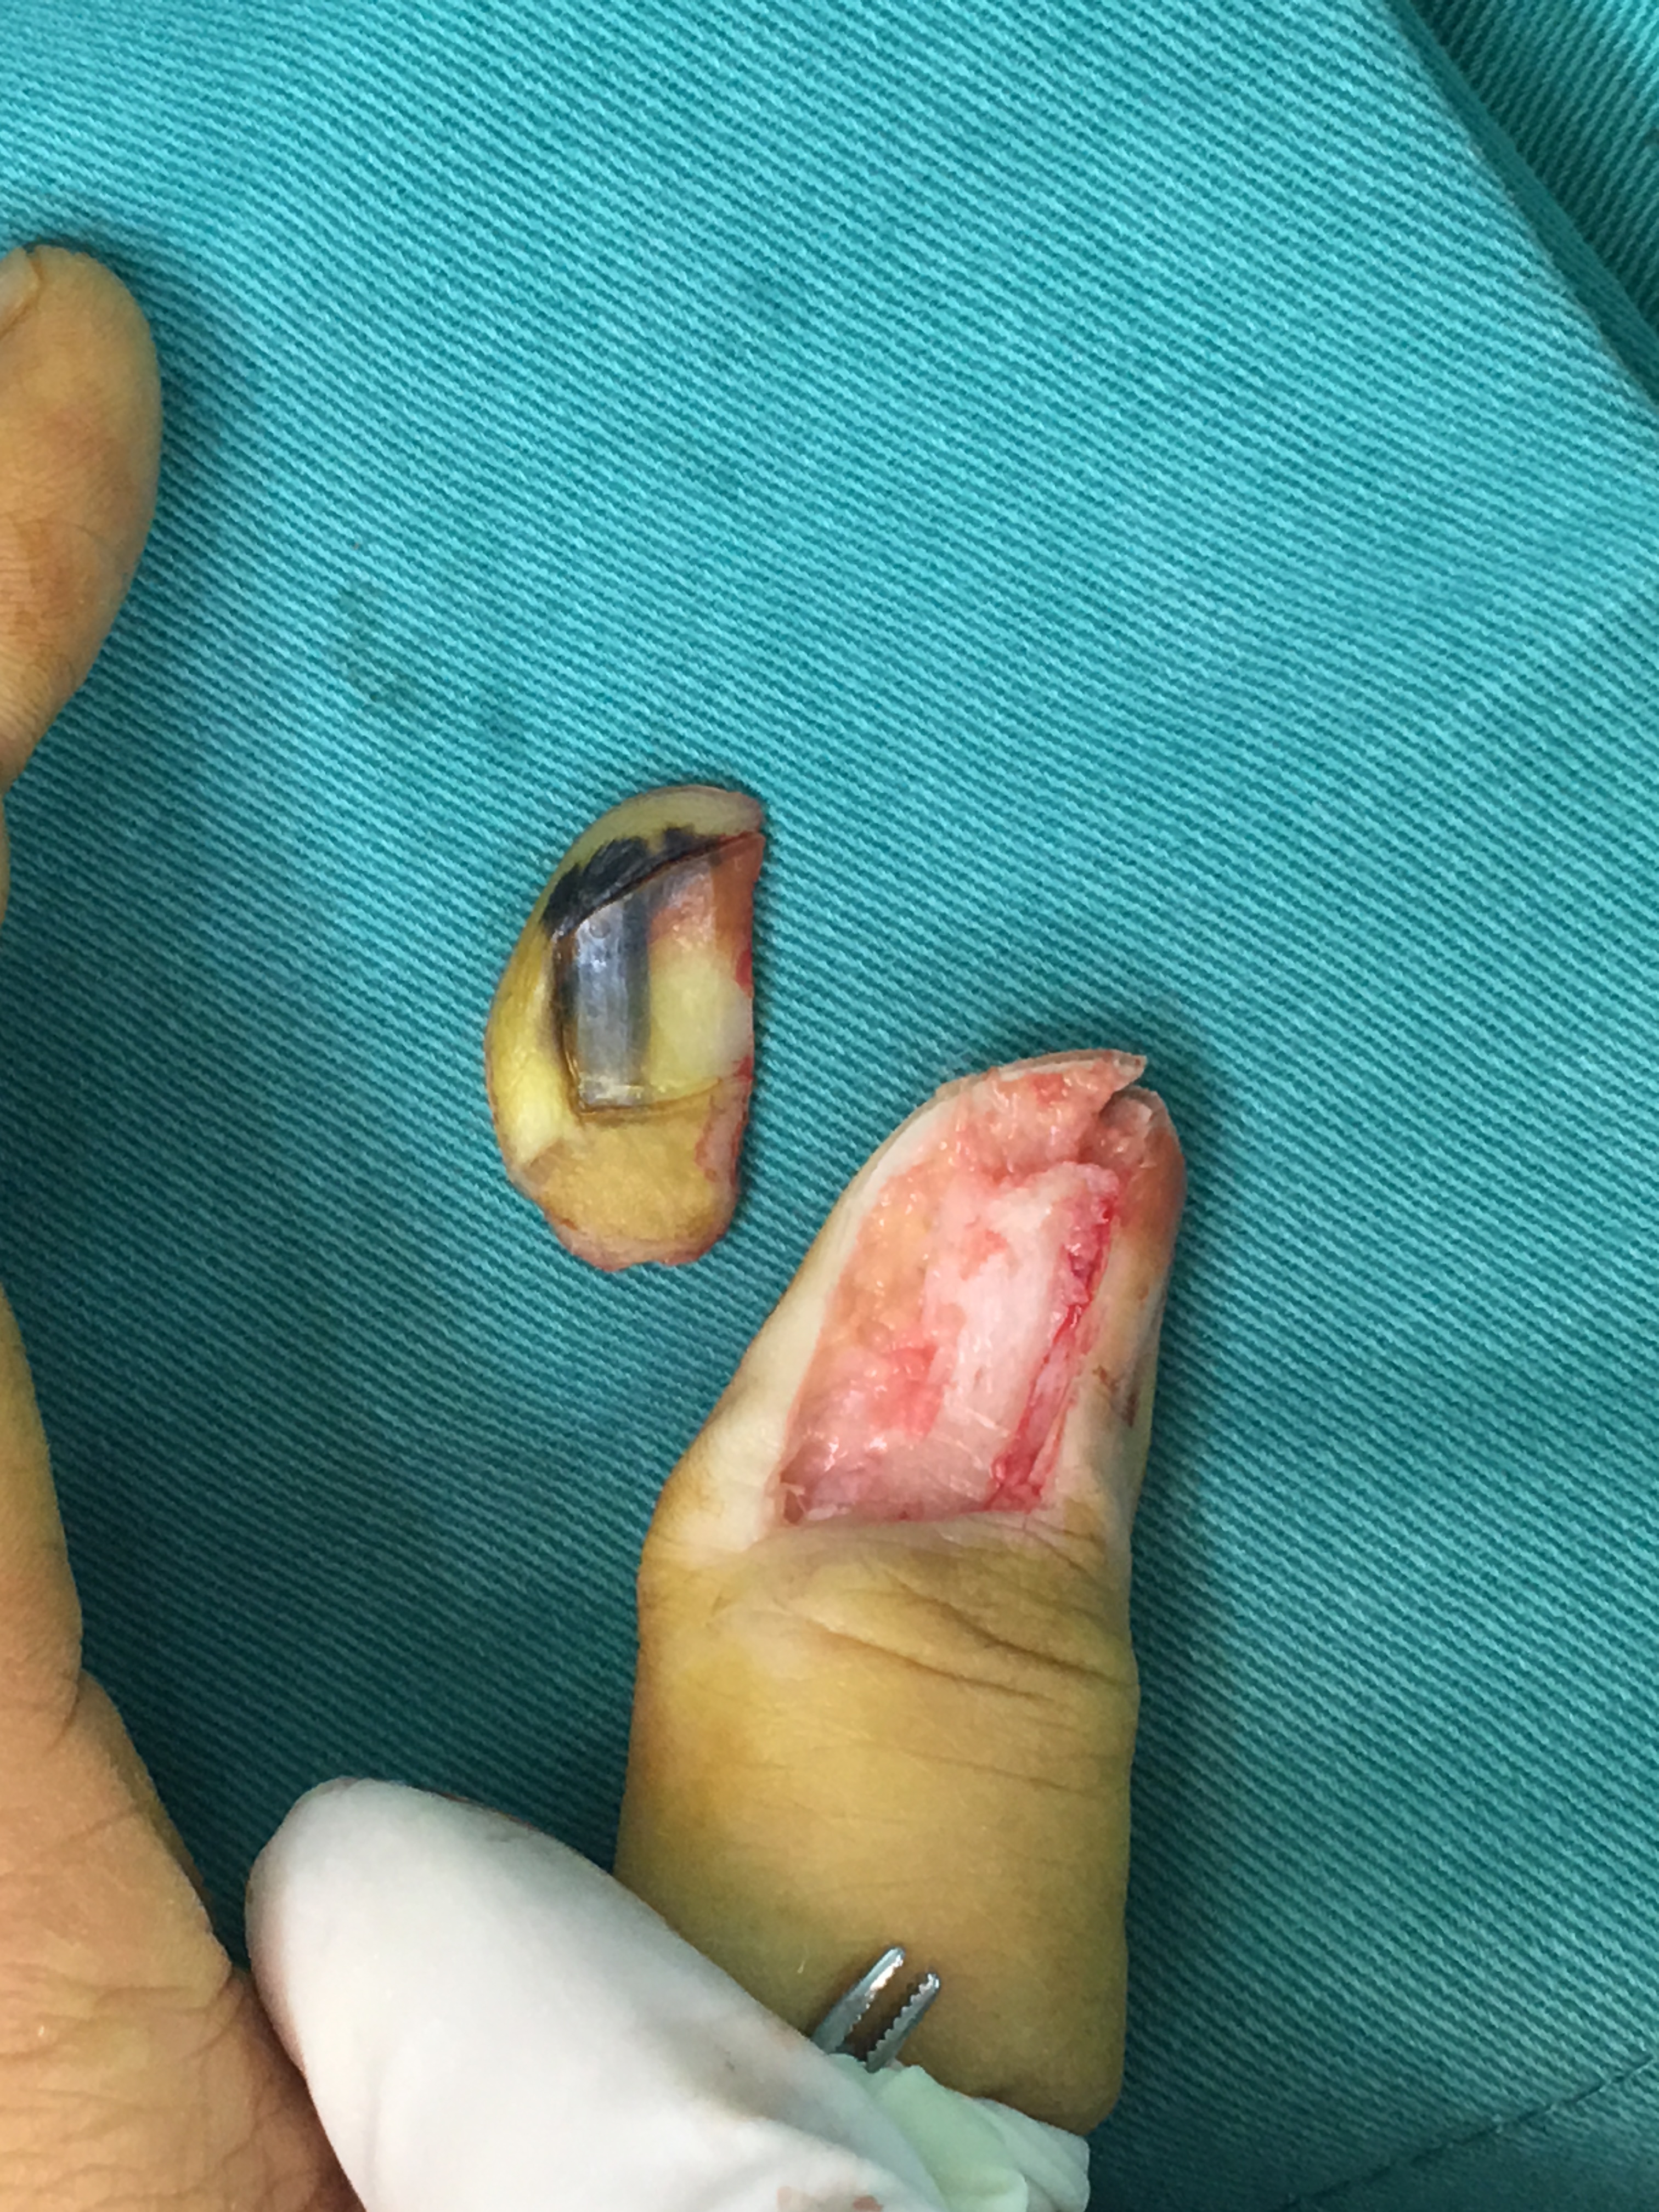 1周后病理结果提示为:拇指恶性黑色素瘤!